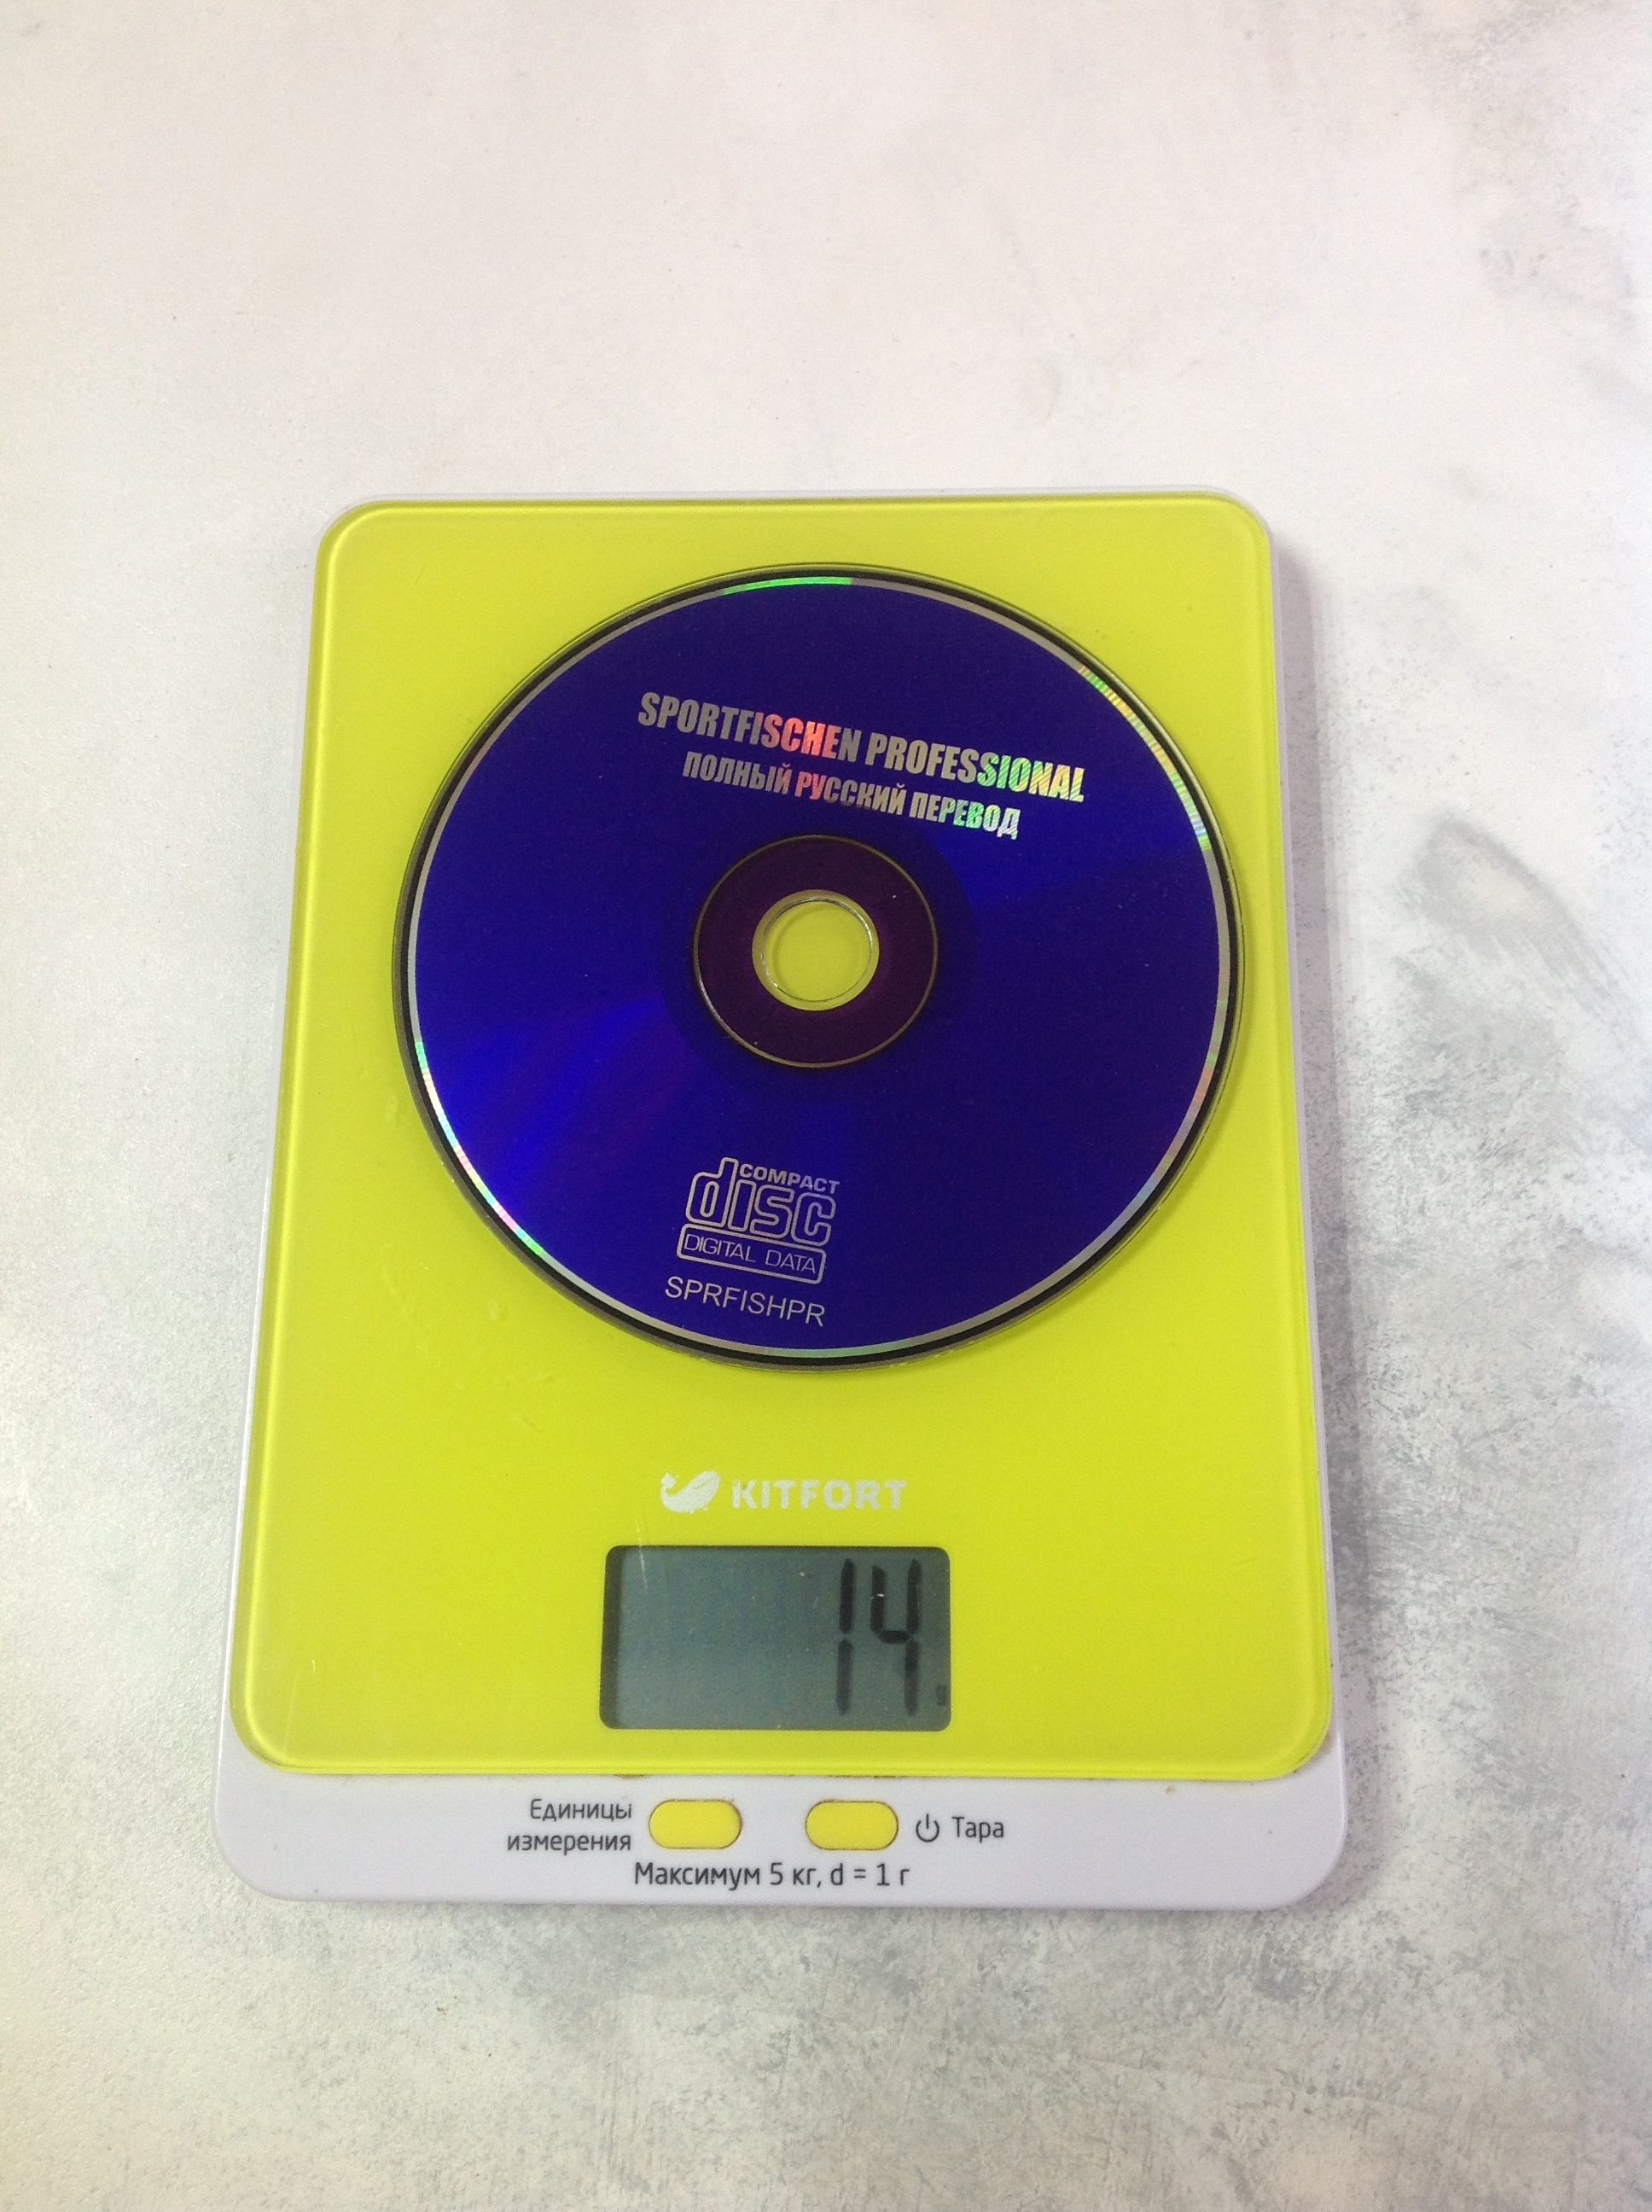 一张 CD 有多重？